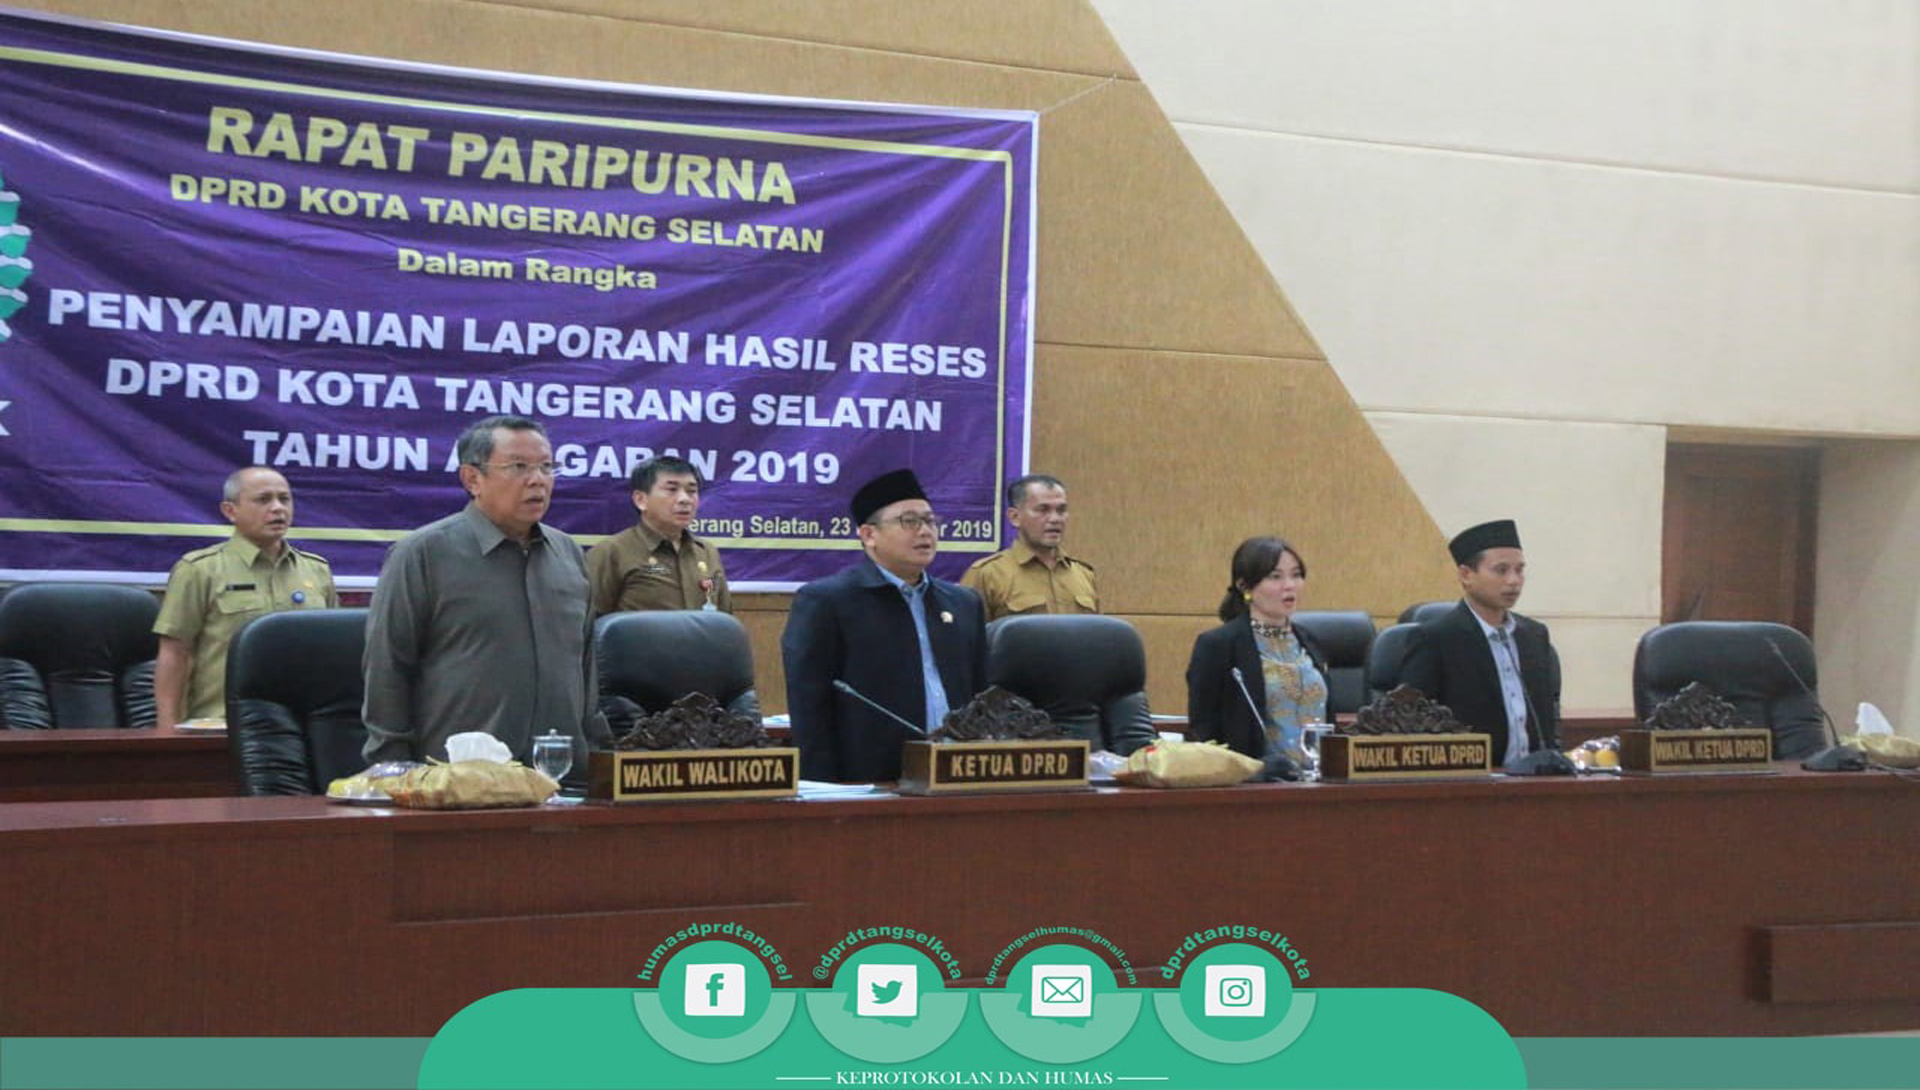 DPRD Kota Tangerang Selatan Gelar Dua Agenda Rapat Paripurna